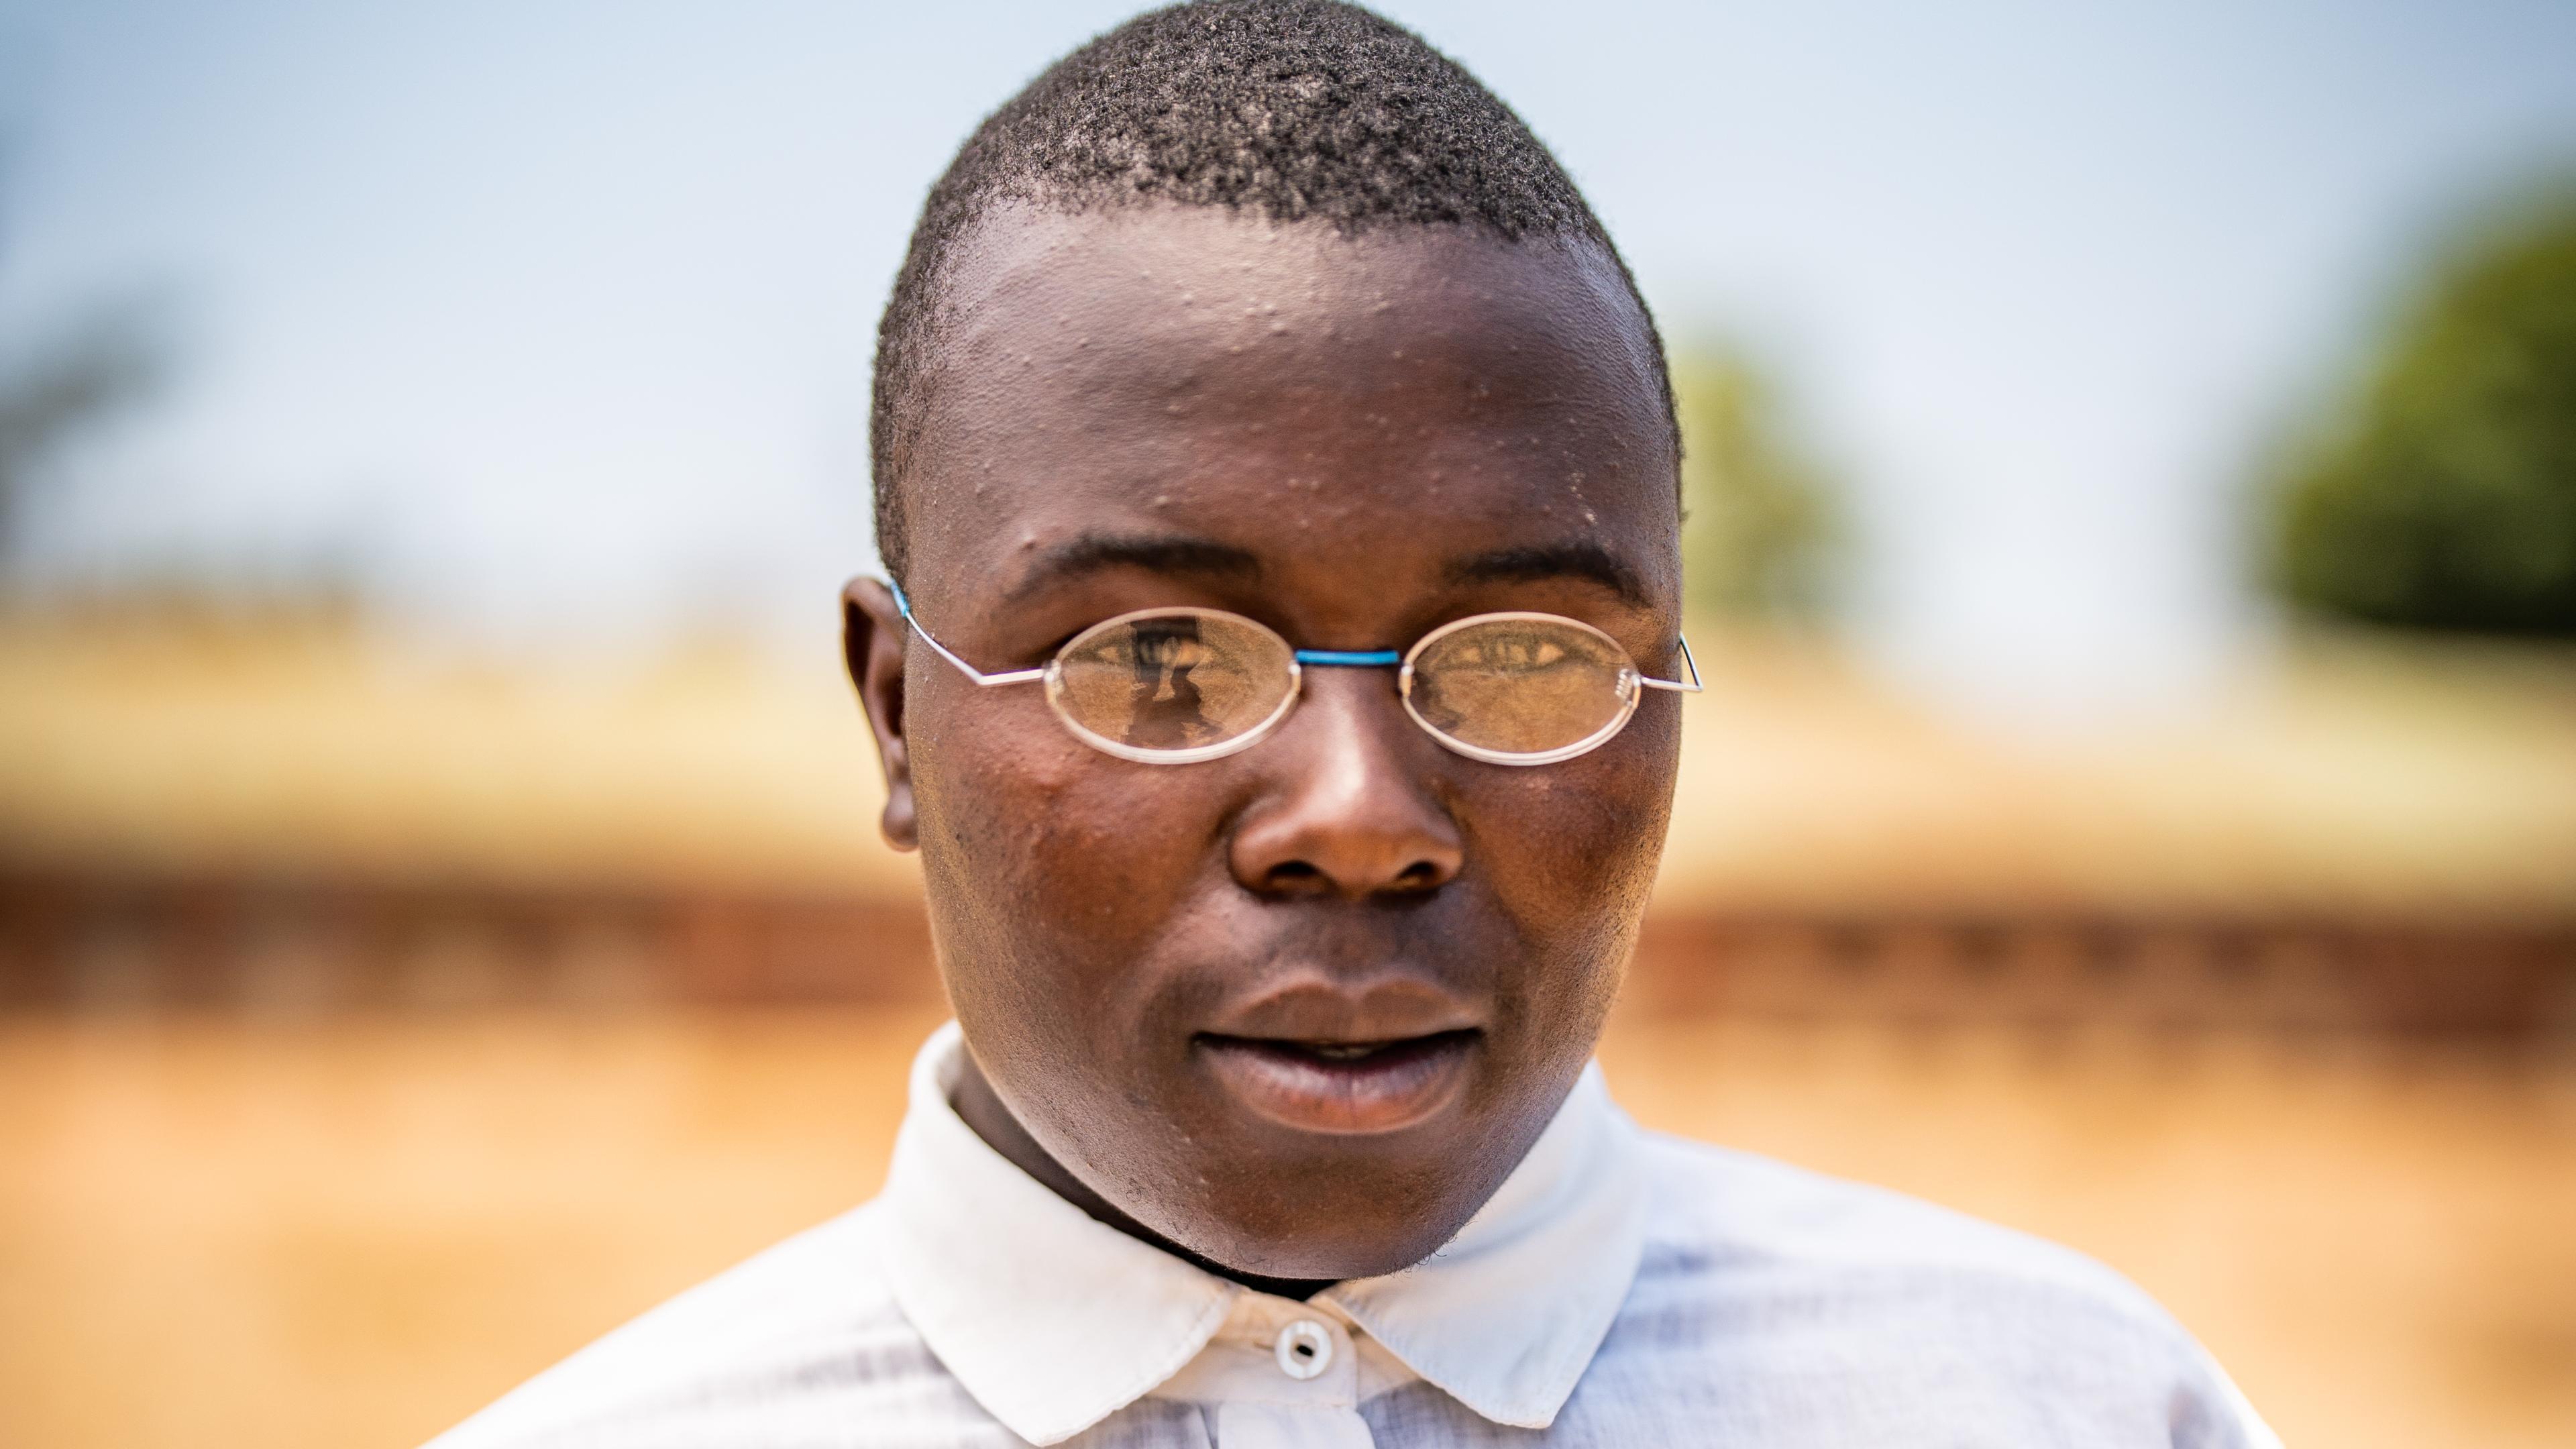 Malawischer Junge mit Brille und Hemd